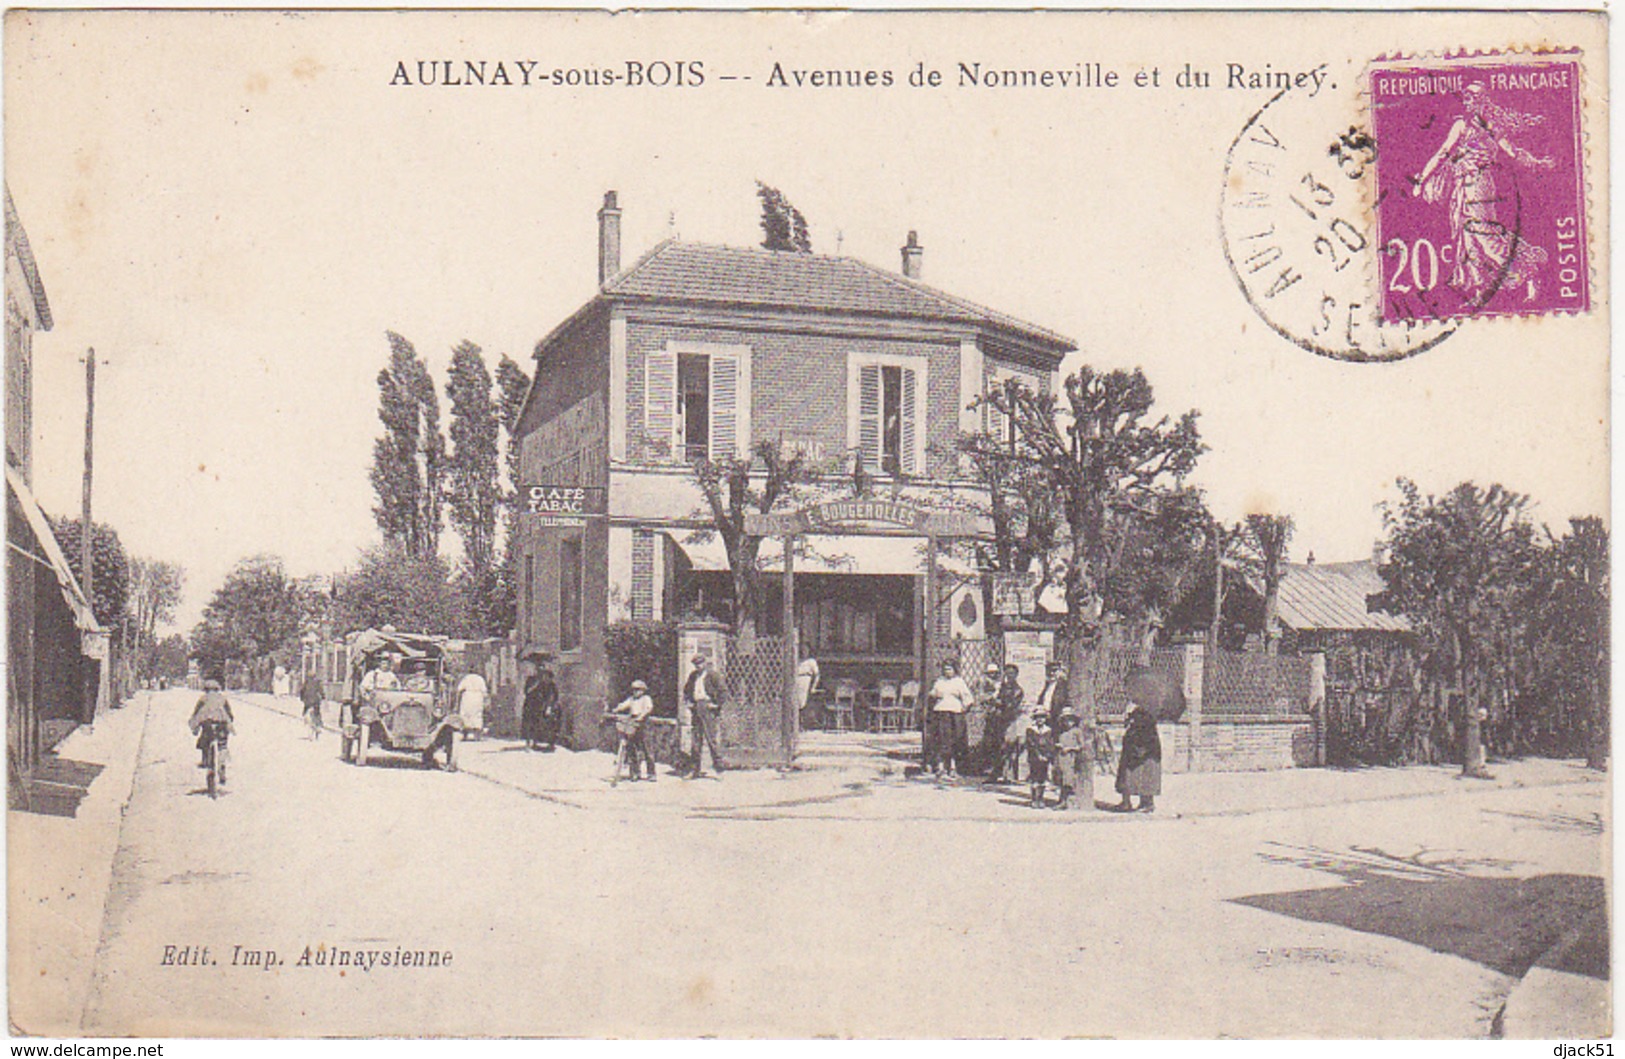 93 - AULNAY-sous-BOIS - Avenues De Nonneville Et Du Raincy - 1933 / Café, Tabac E. BOUGEROLLES / Voiture - Aulnay Sous Bois